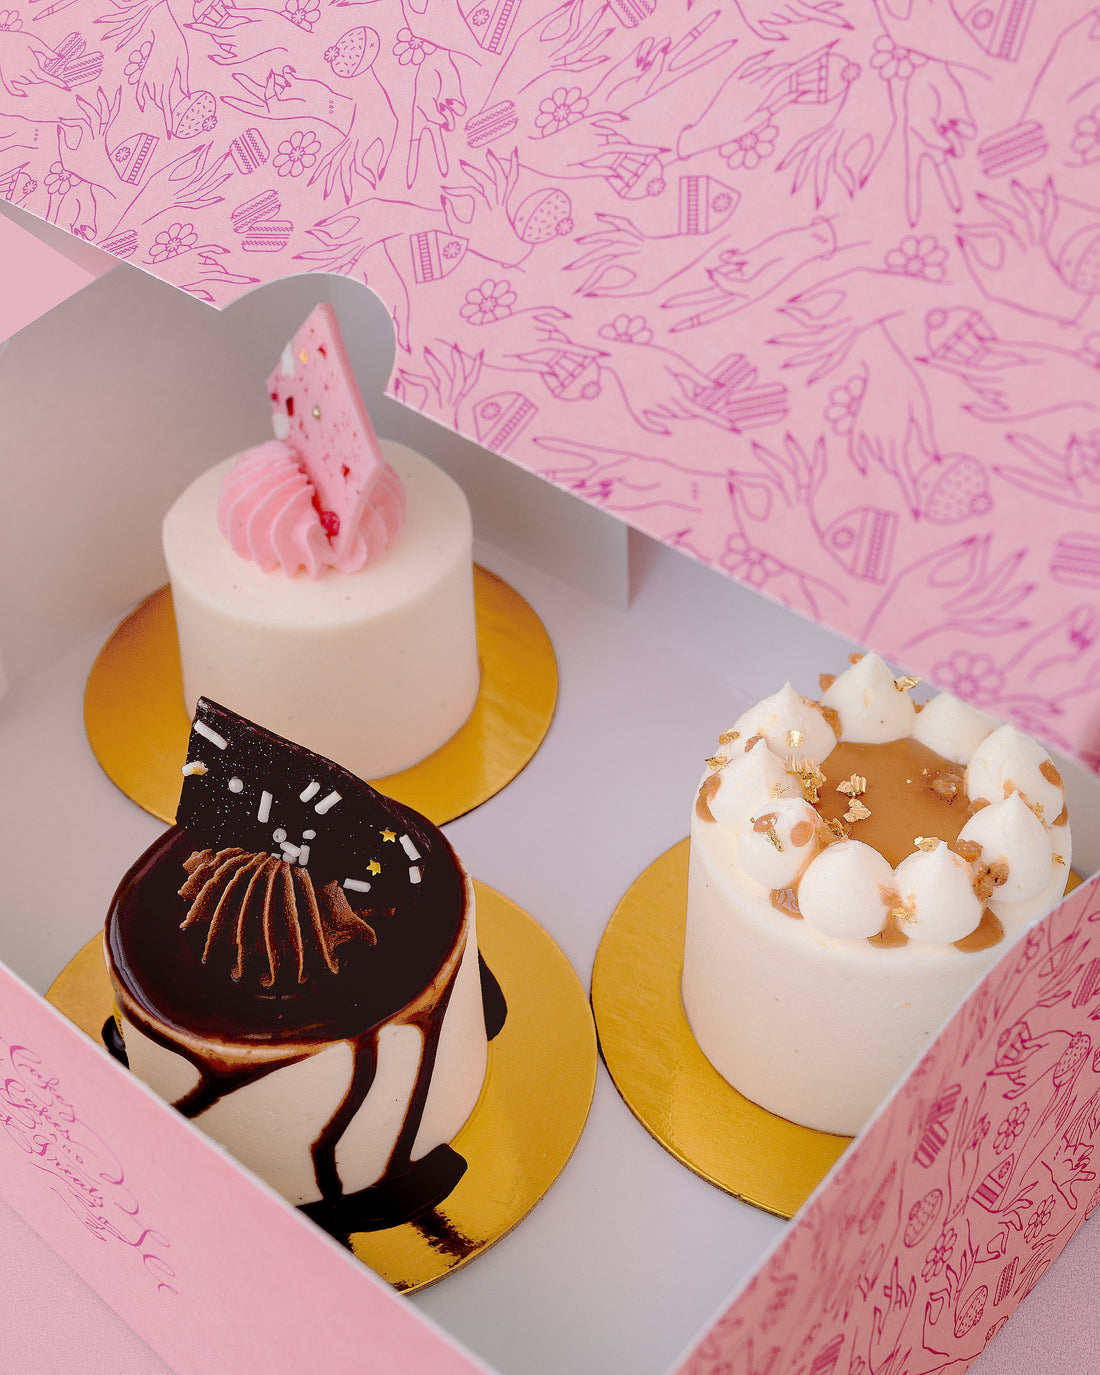 Cake boxes are my favorite 🤗 #caketok #cake #cakebox #cakeboxing | cake box  | TikTok